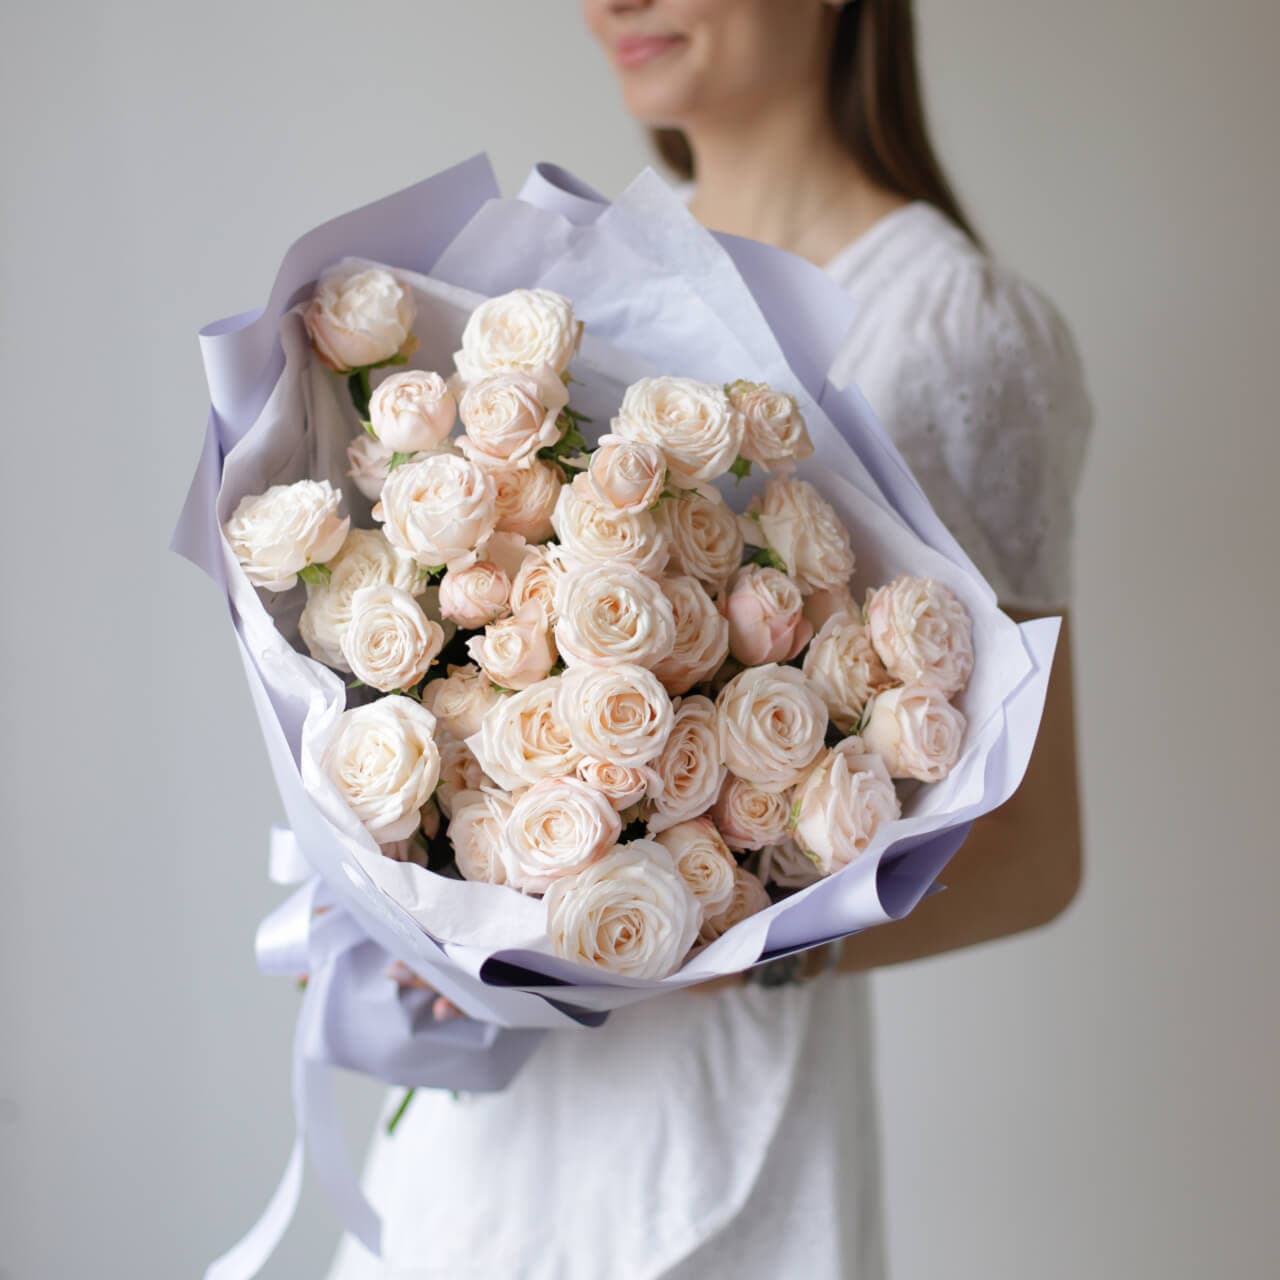 Кустовые пионовидные розы кремового оттенка в лавандовом оформлении №1494 - Фото 24